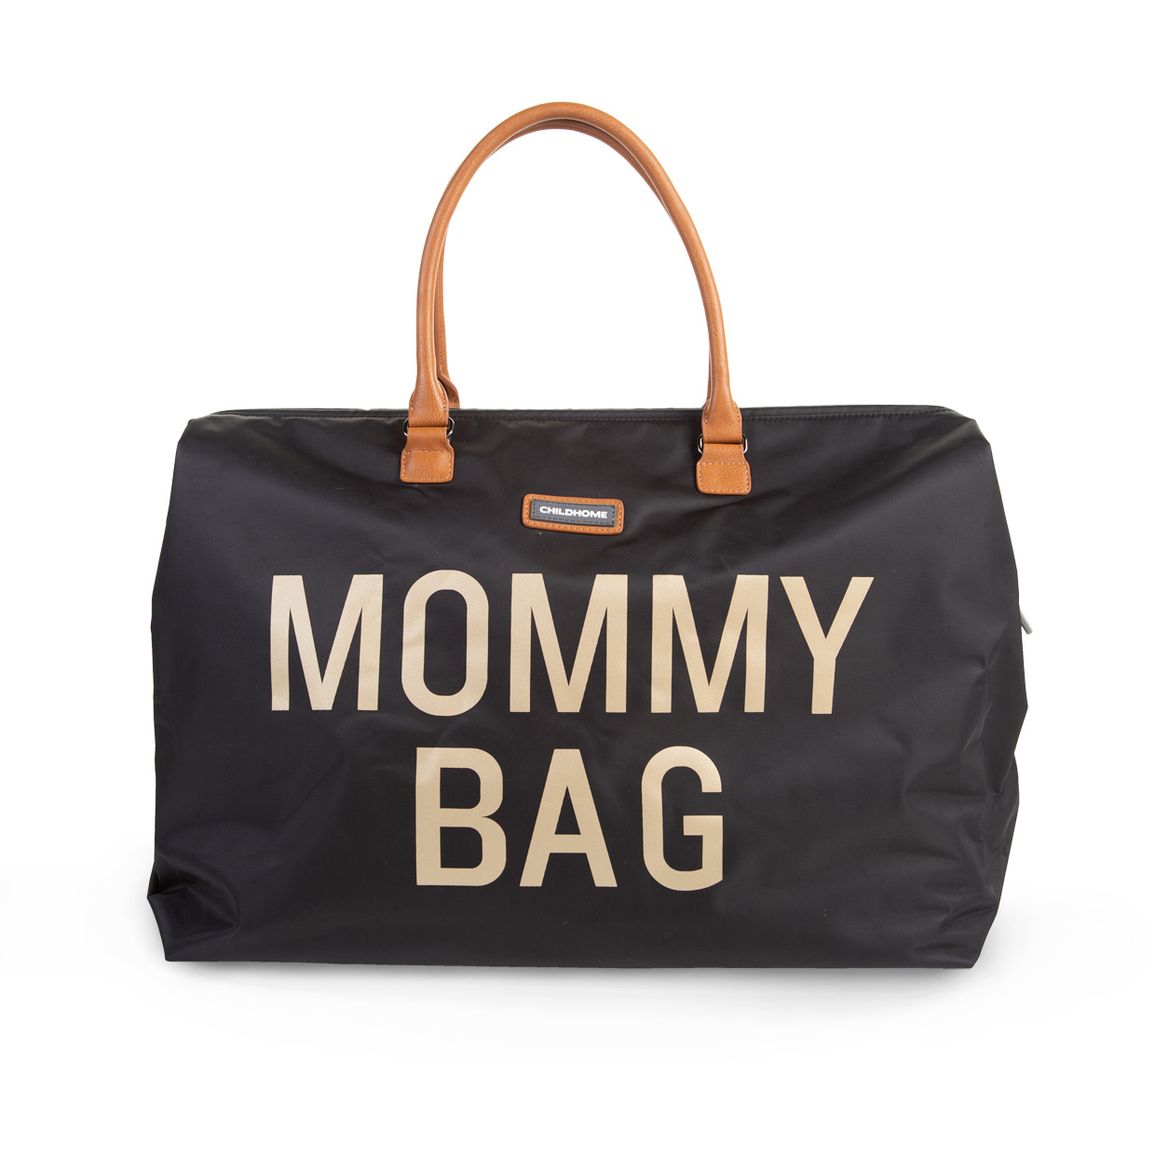 Prebaľovacia taška  Mommy Bag Big Black Gold